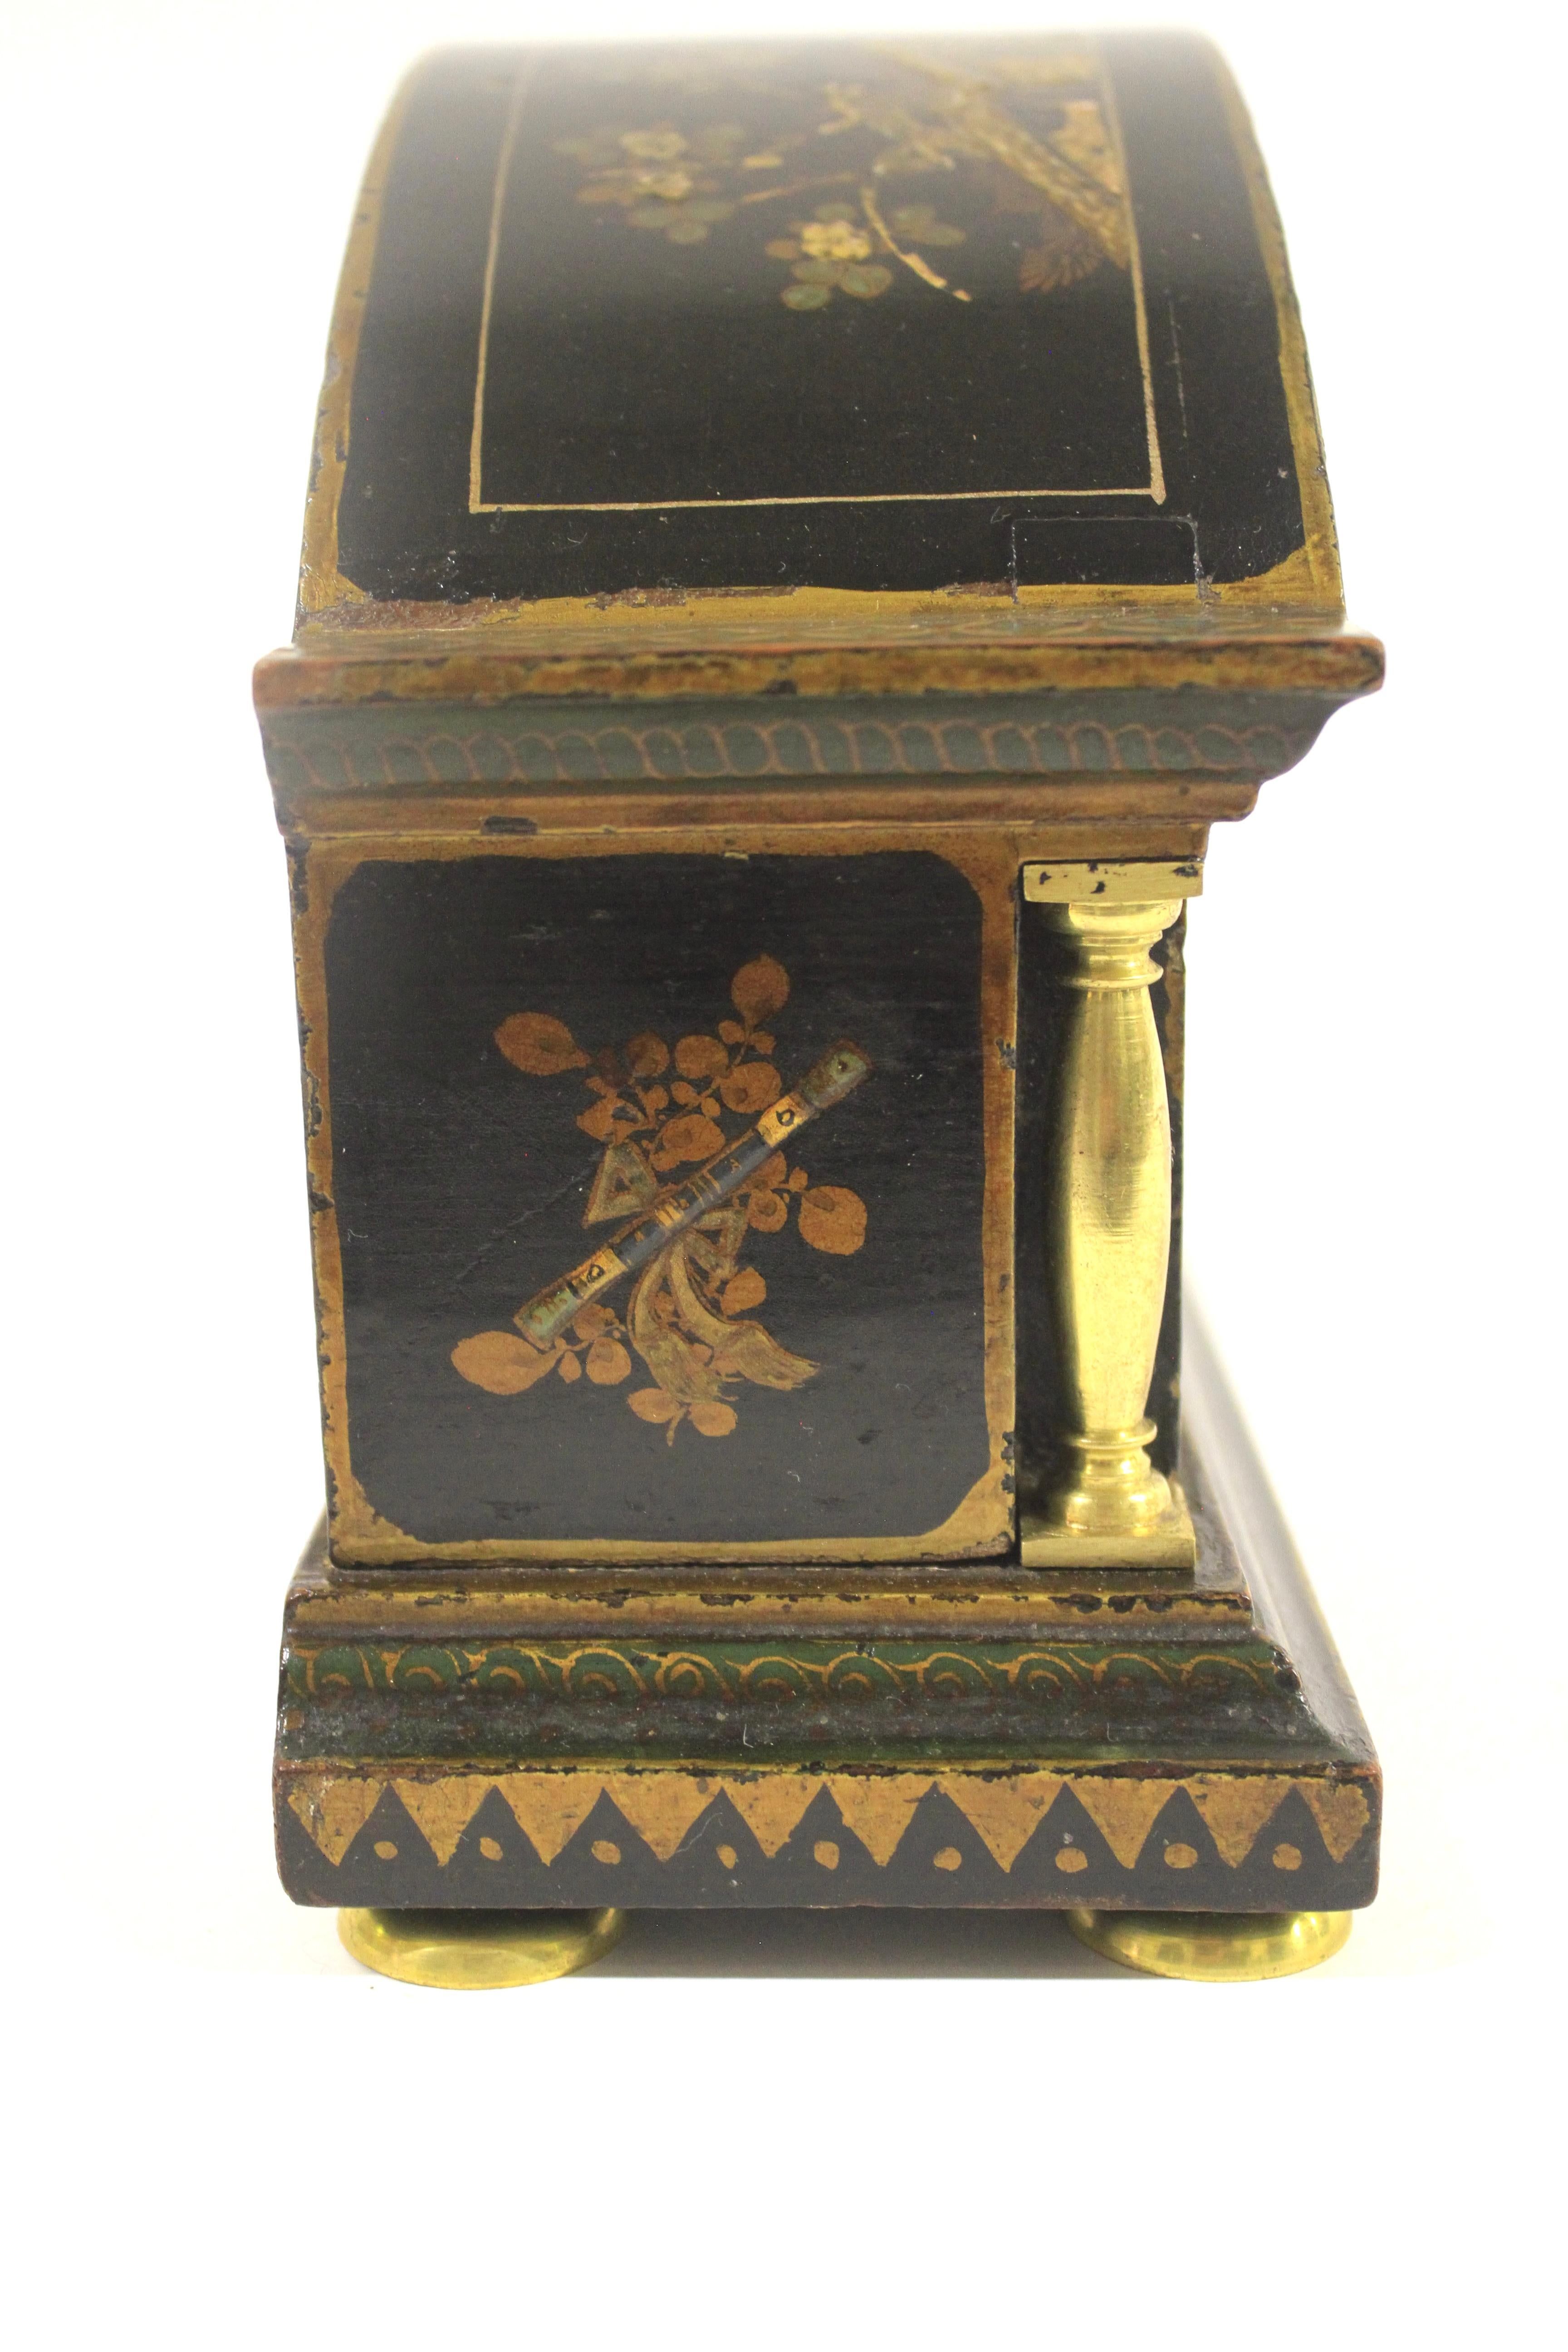 Horloge de cheminée décorée en Chinoiserie circa 1920
Fond noir avec décoration dorée
Dessus en forme de dôme, avec des colonnes en laiton doré de chaque côté. 
Face à dôme en émail crème ,
Verre dôme biseauté, bord en laiton doré,
Mouvement